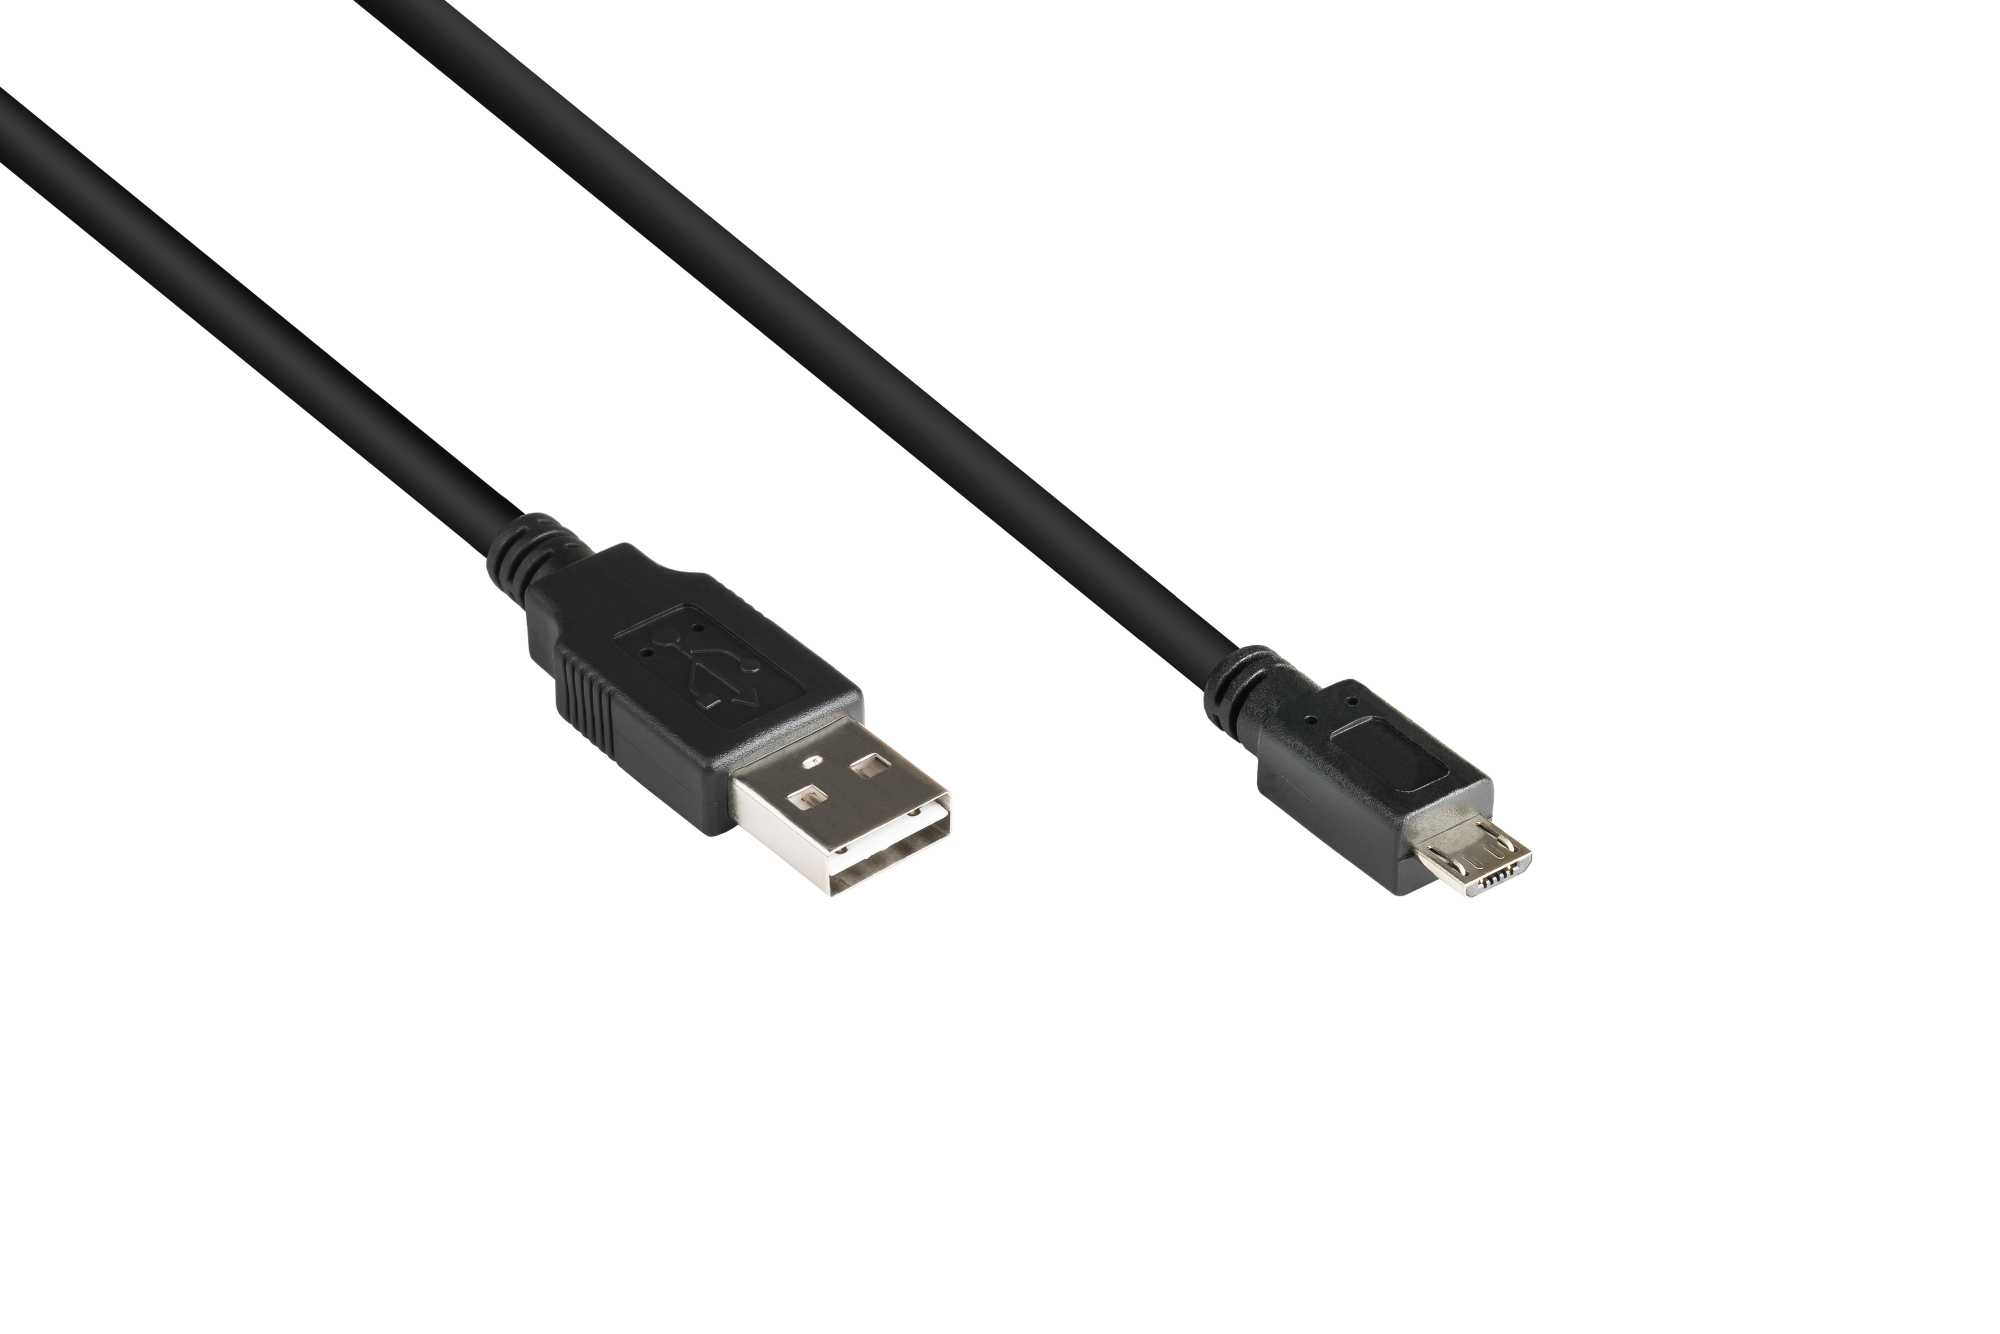 Anschlusskabel USB 2.0 EASY Stecker A an Stecker Micro B, schwarz, 5m